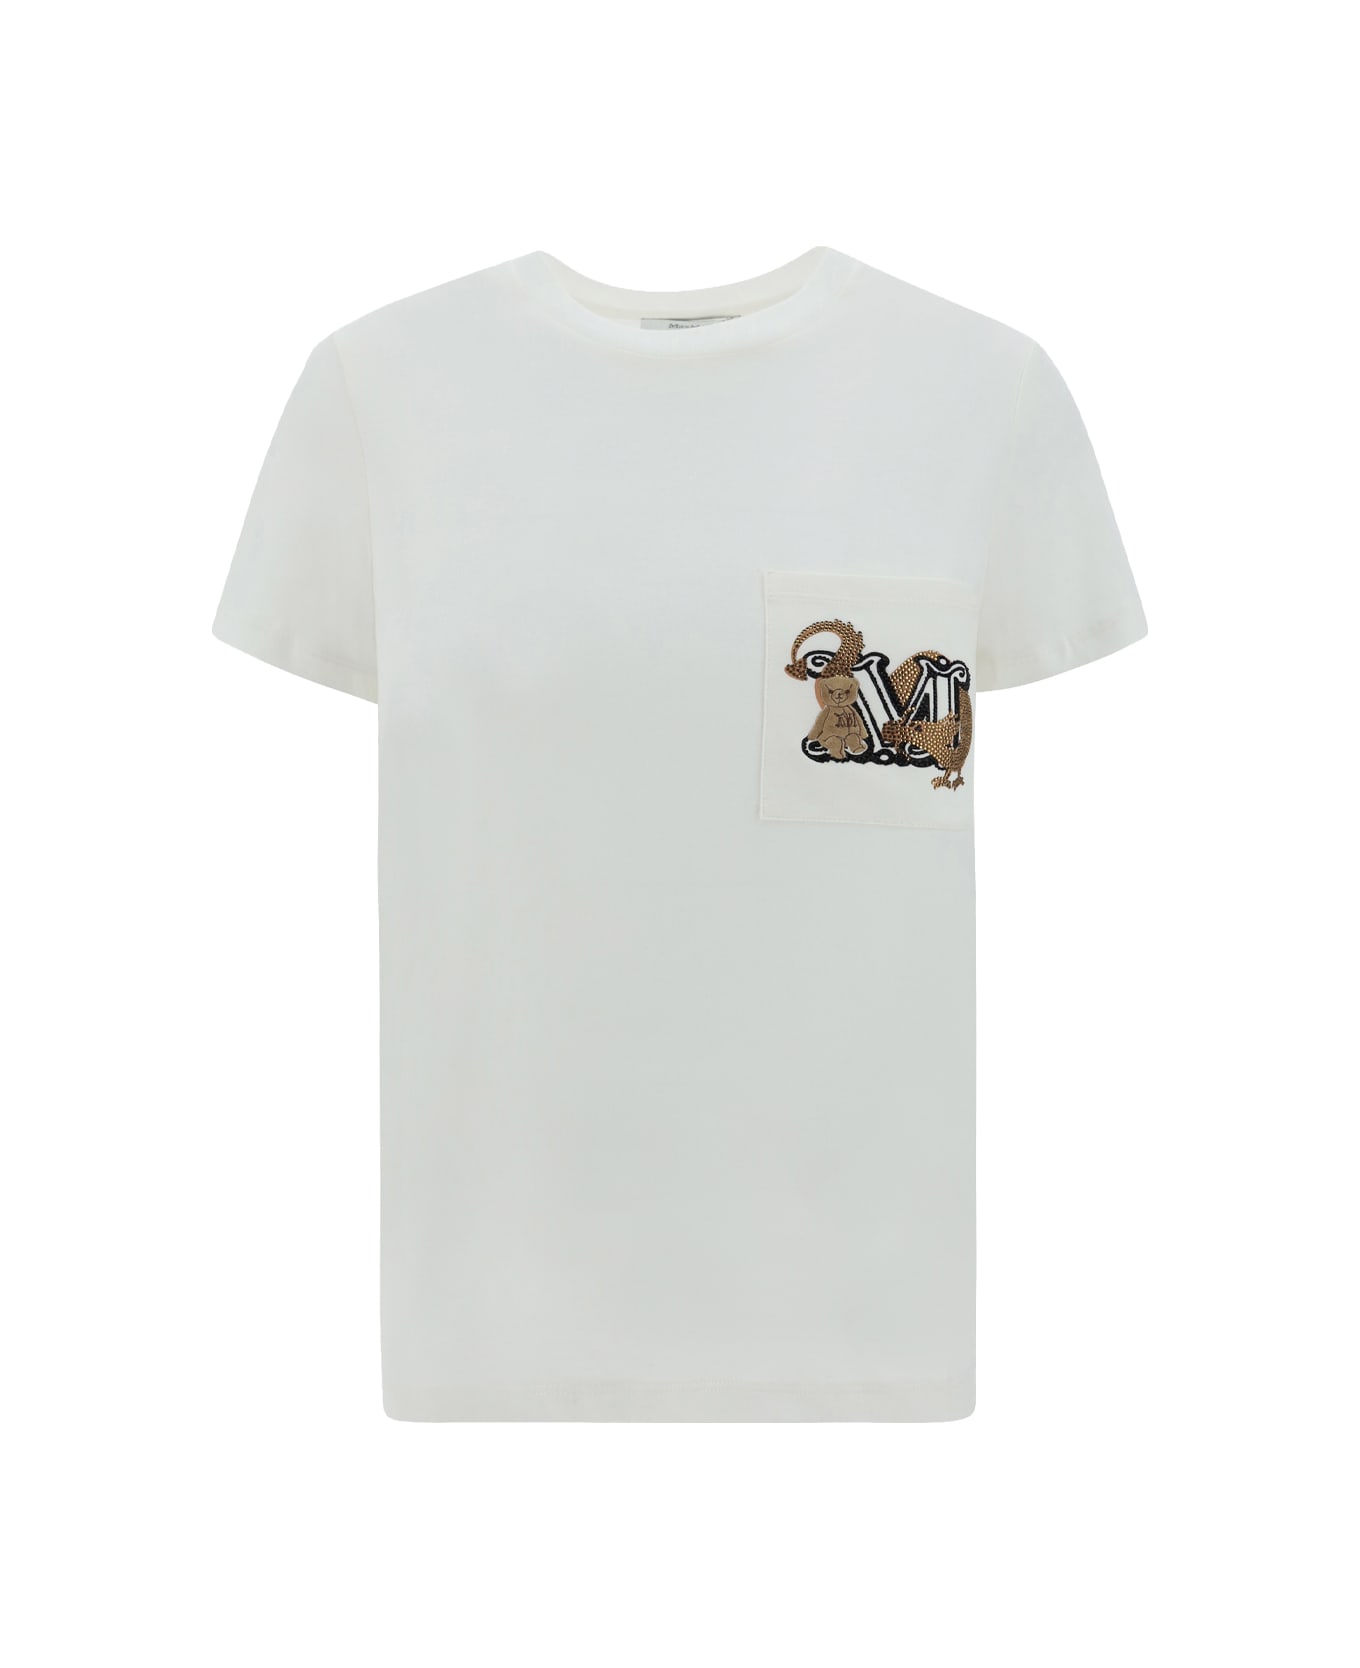 Max Mara Elmo T-shirt - White Tシャツ